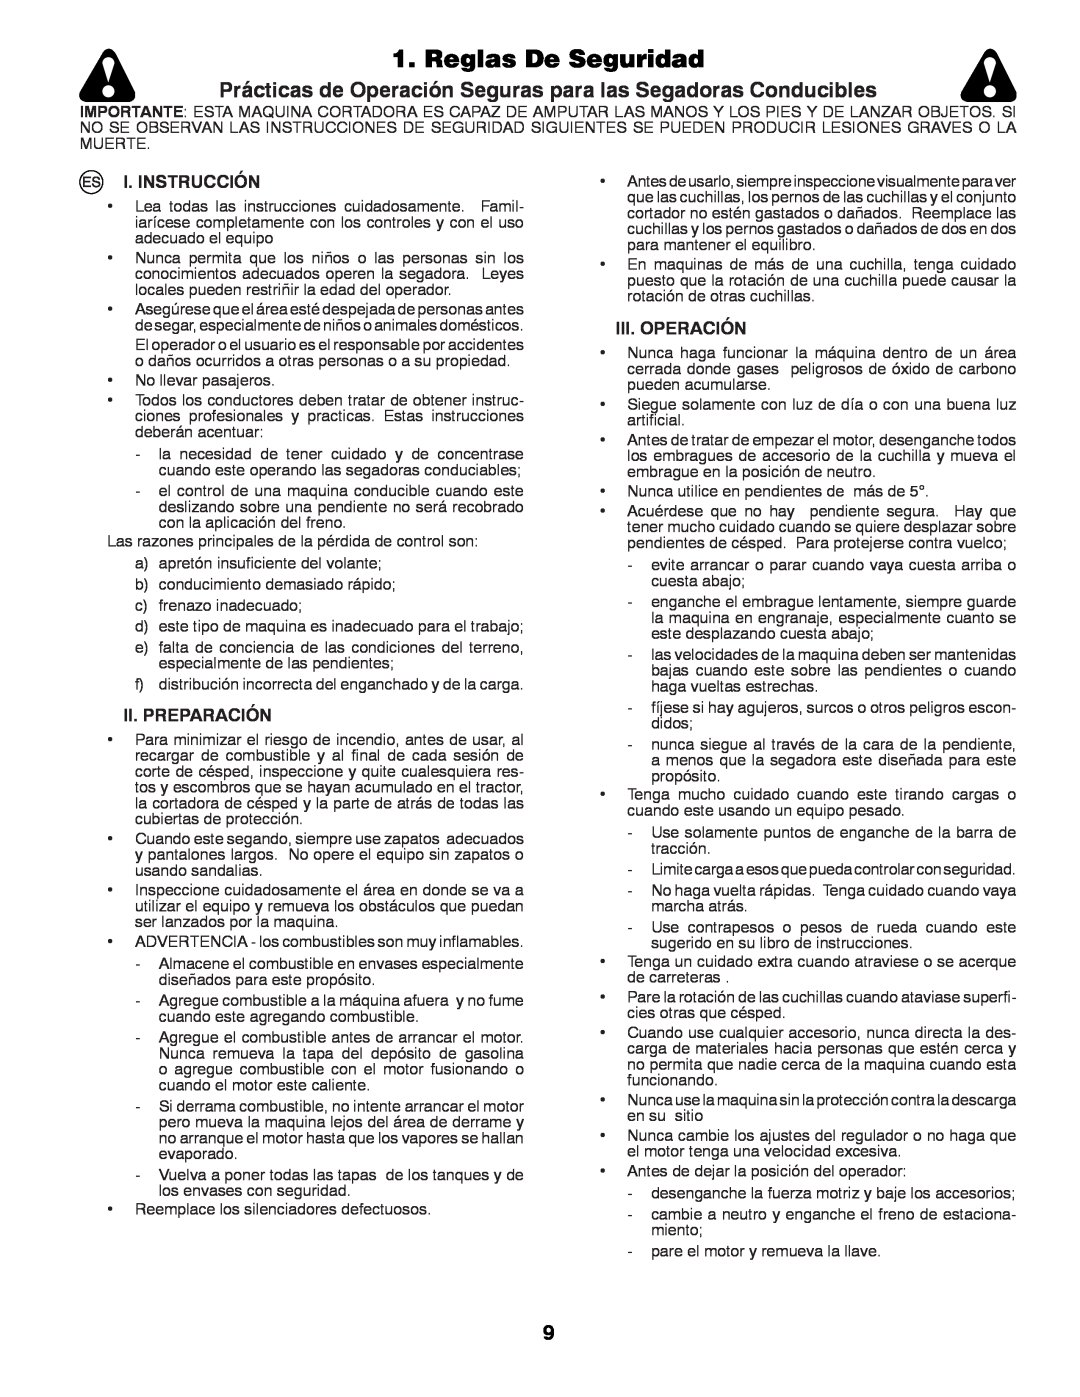 Husqvarna LTH152 Reglas De Seguridad, Prácticas de Operación Seguras para las Segadoras Conducibles, I. Instrucción 